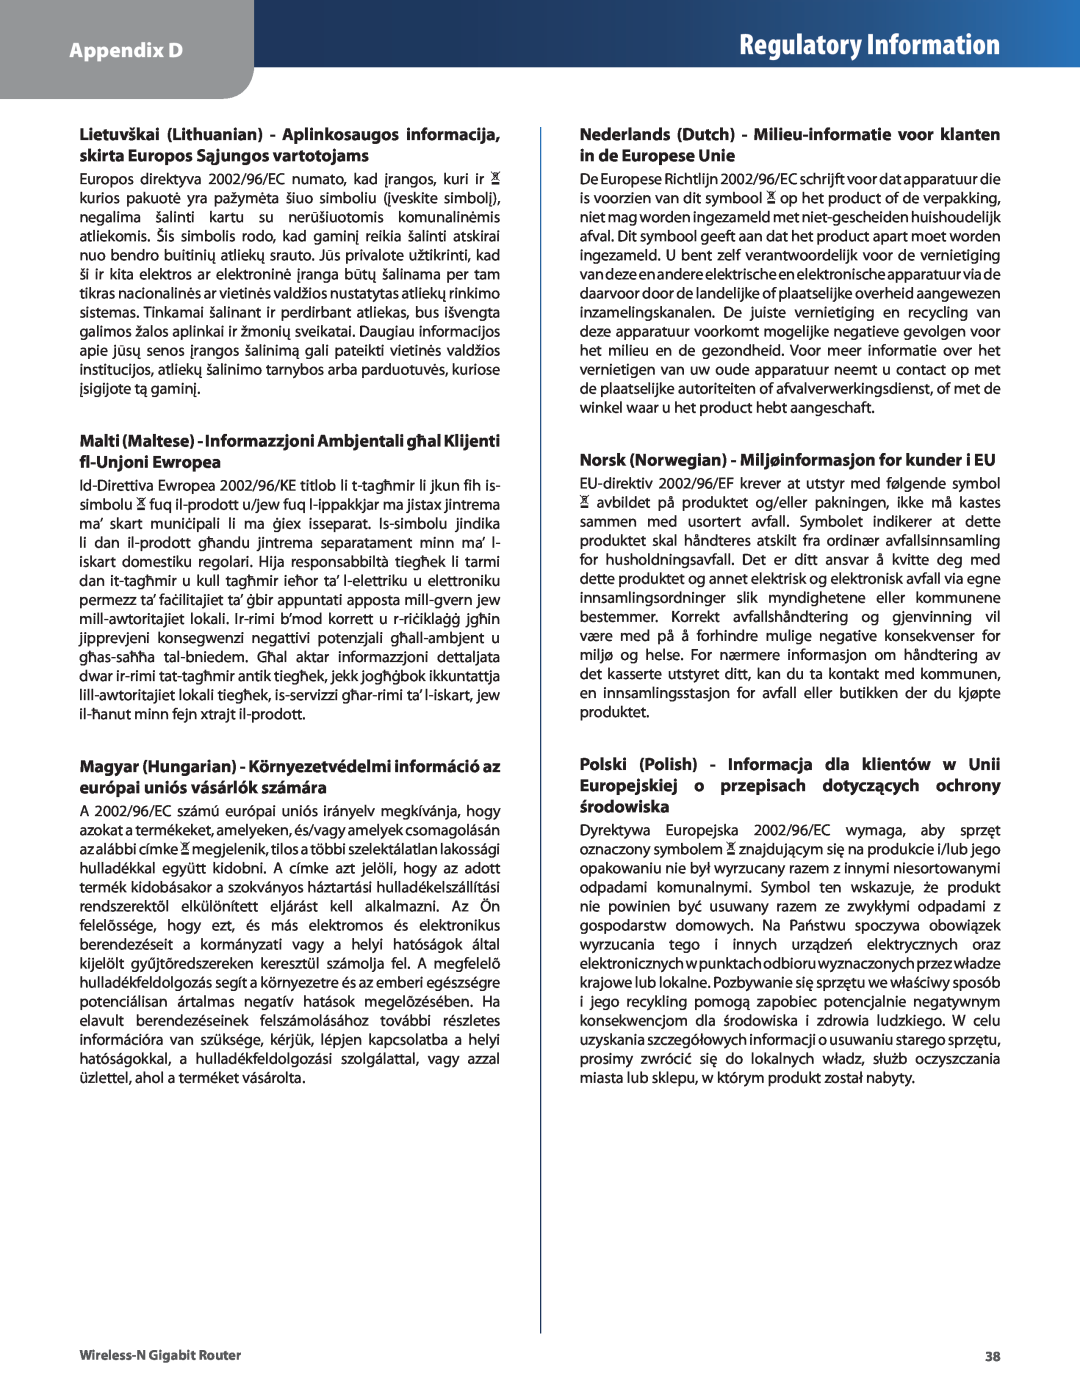 Linksys WRT310N Regulatory Information, Appendix D, Nederlands Dutch - Milieu-informatie voor klanten in de Europese Unie 